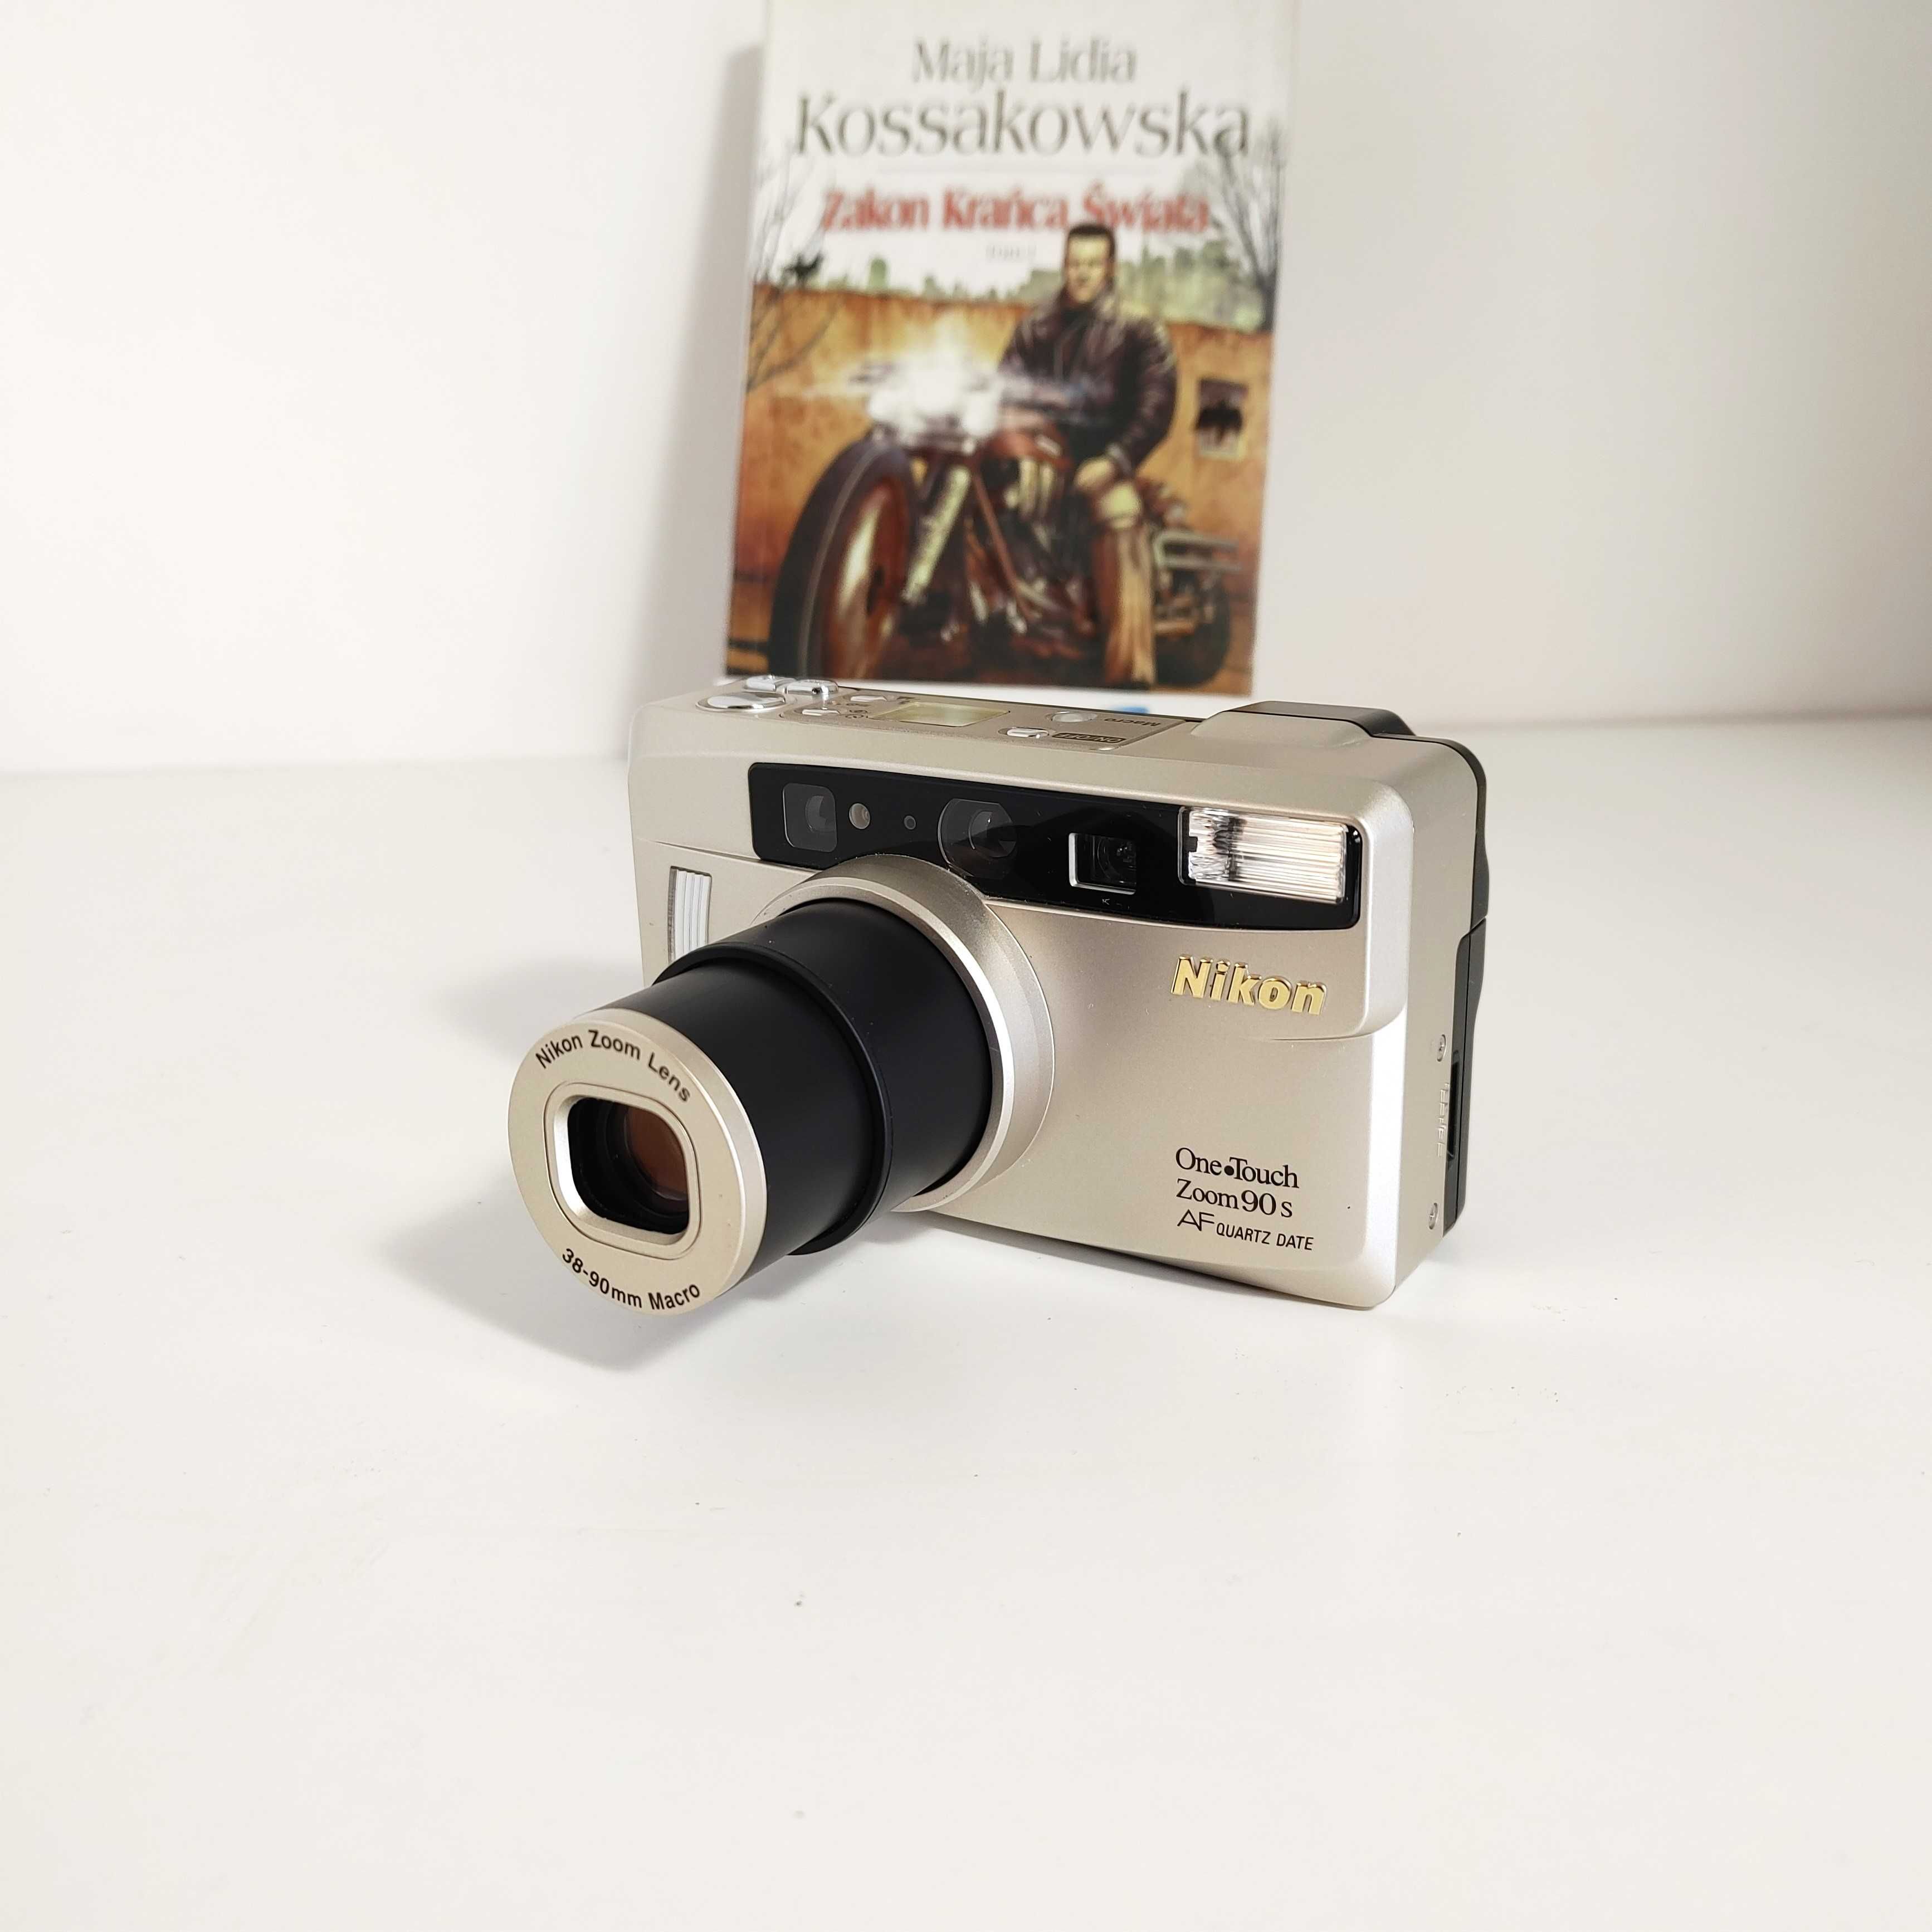 WYJĄTKOWY Kompaktowy aparat analogowy NIKON One Touch Zoom 90s AF